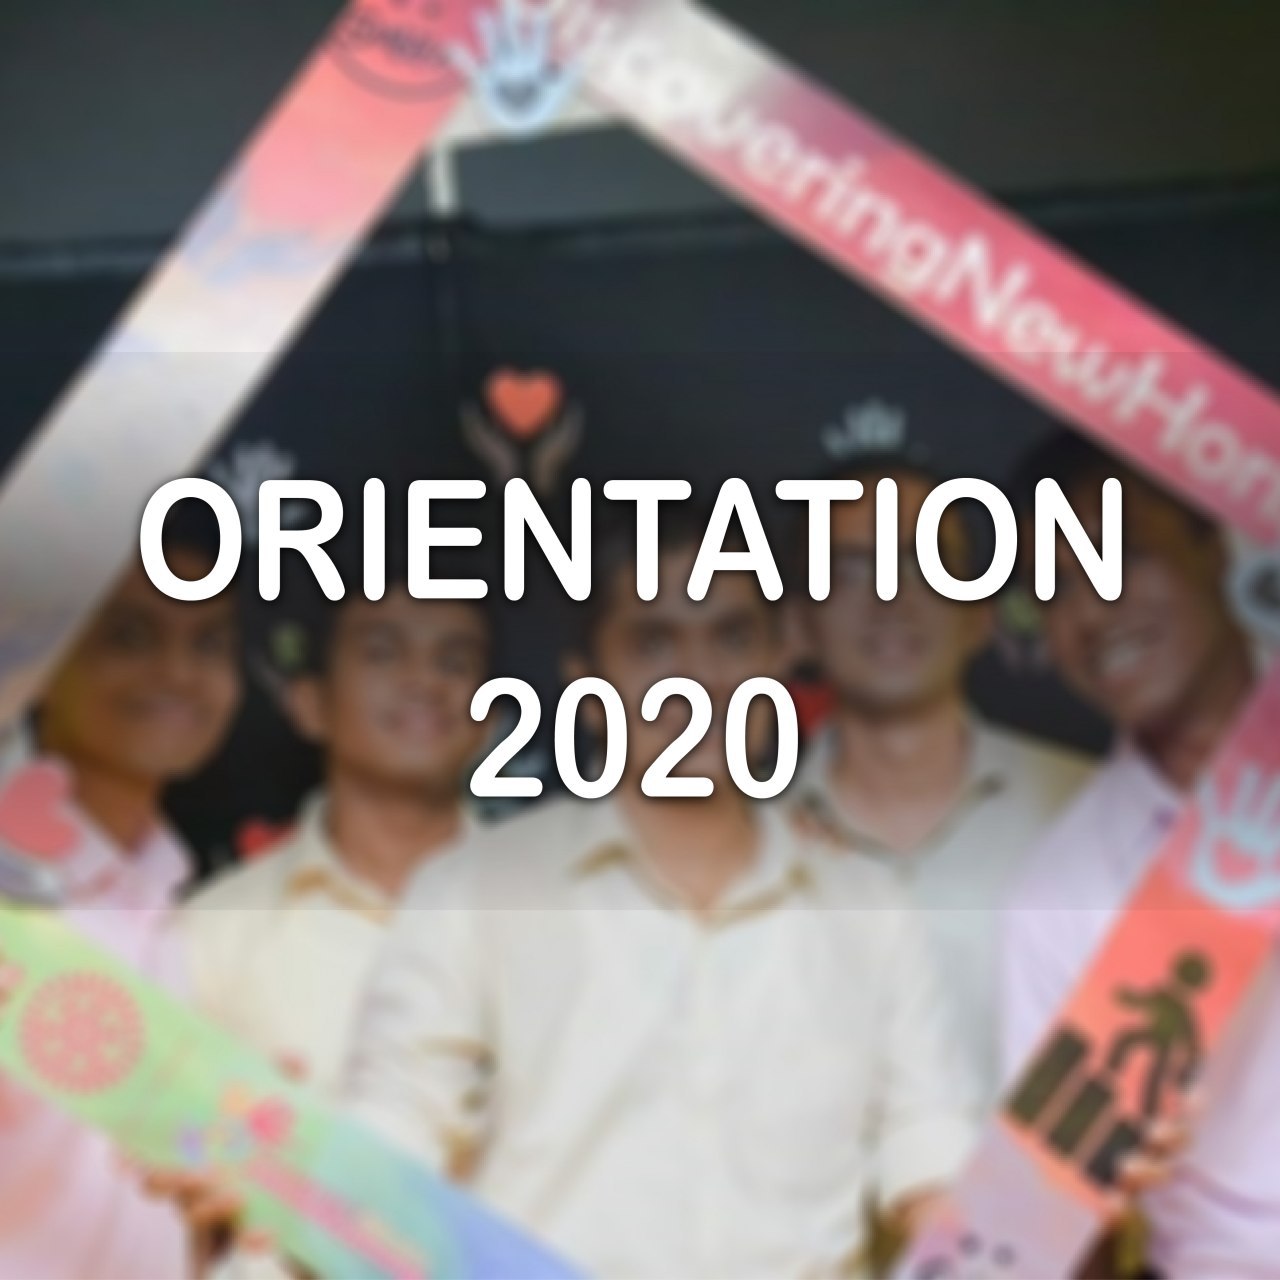 Orientation 2020